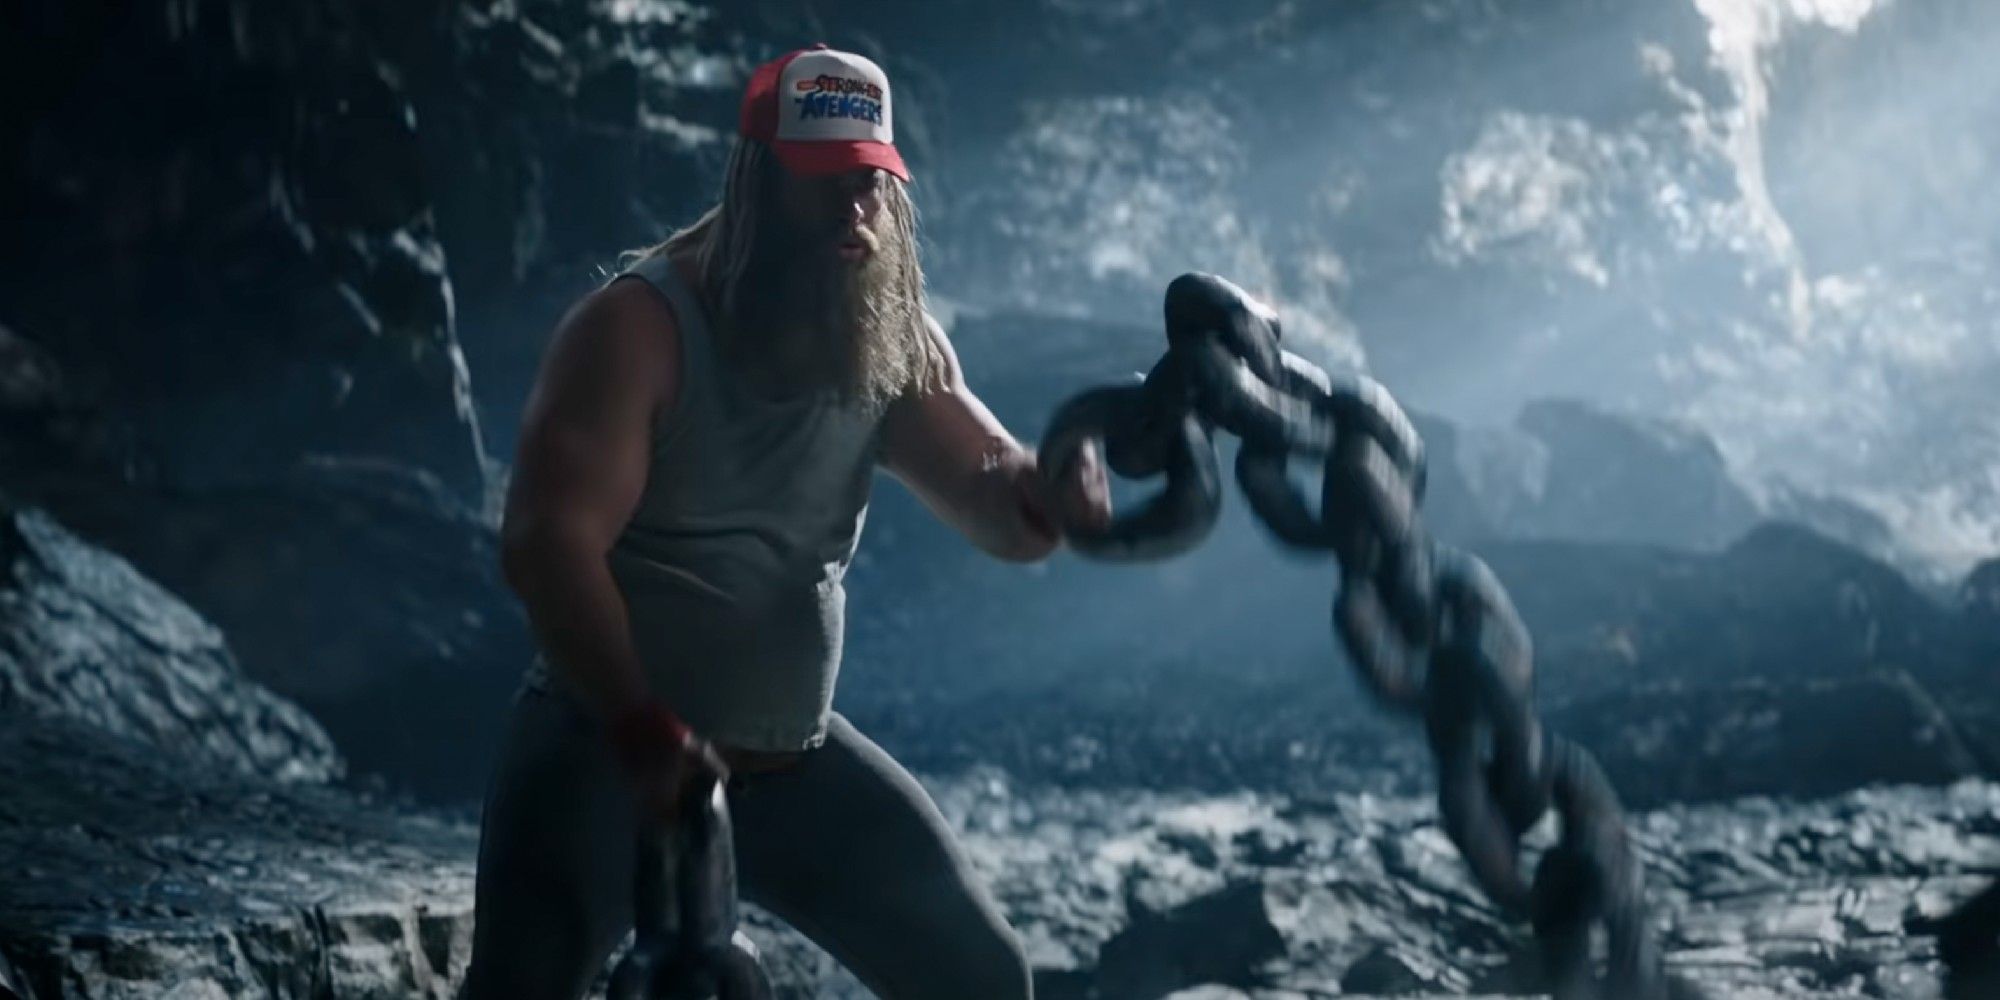 Exclusivo - Thor: Love & Thunder: Trailer mostra18 revelações e segredos da história 3